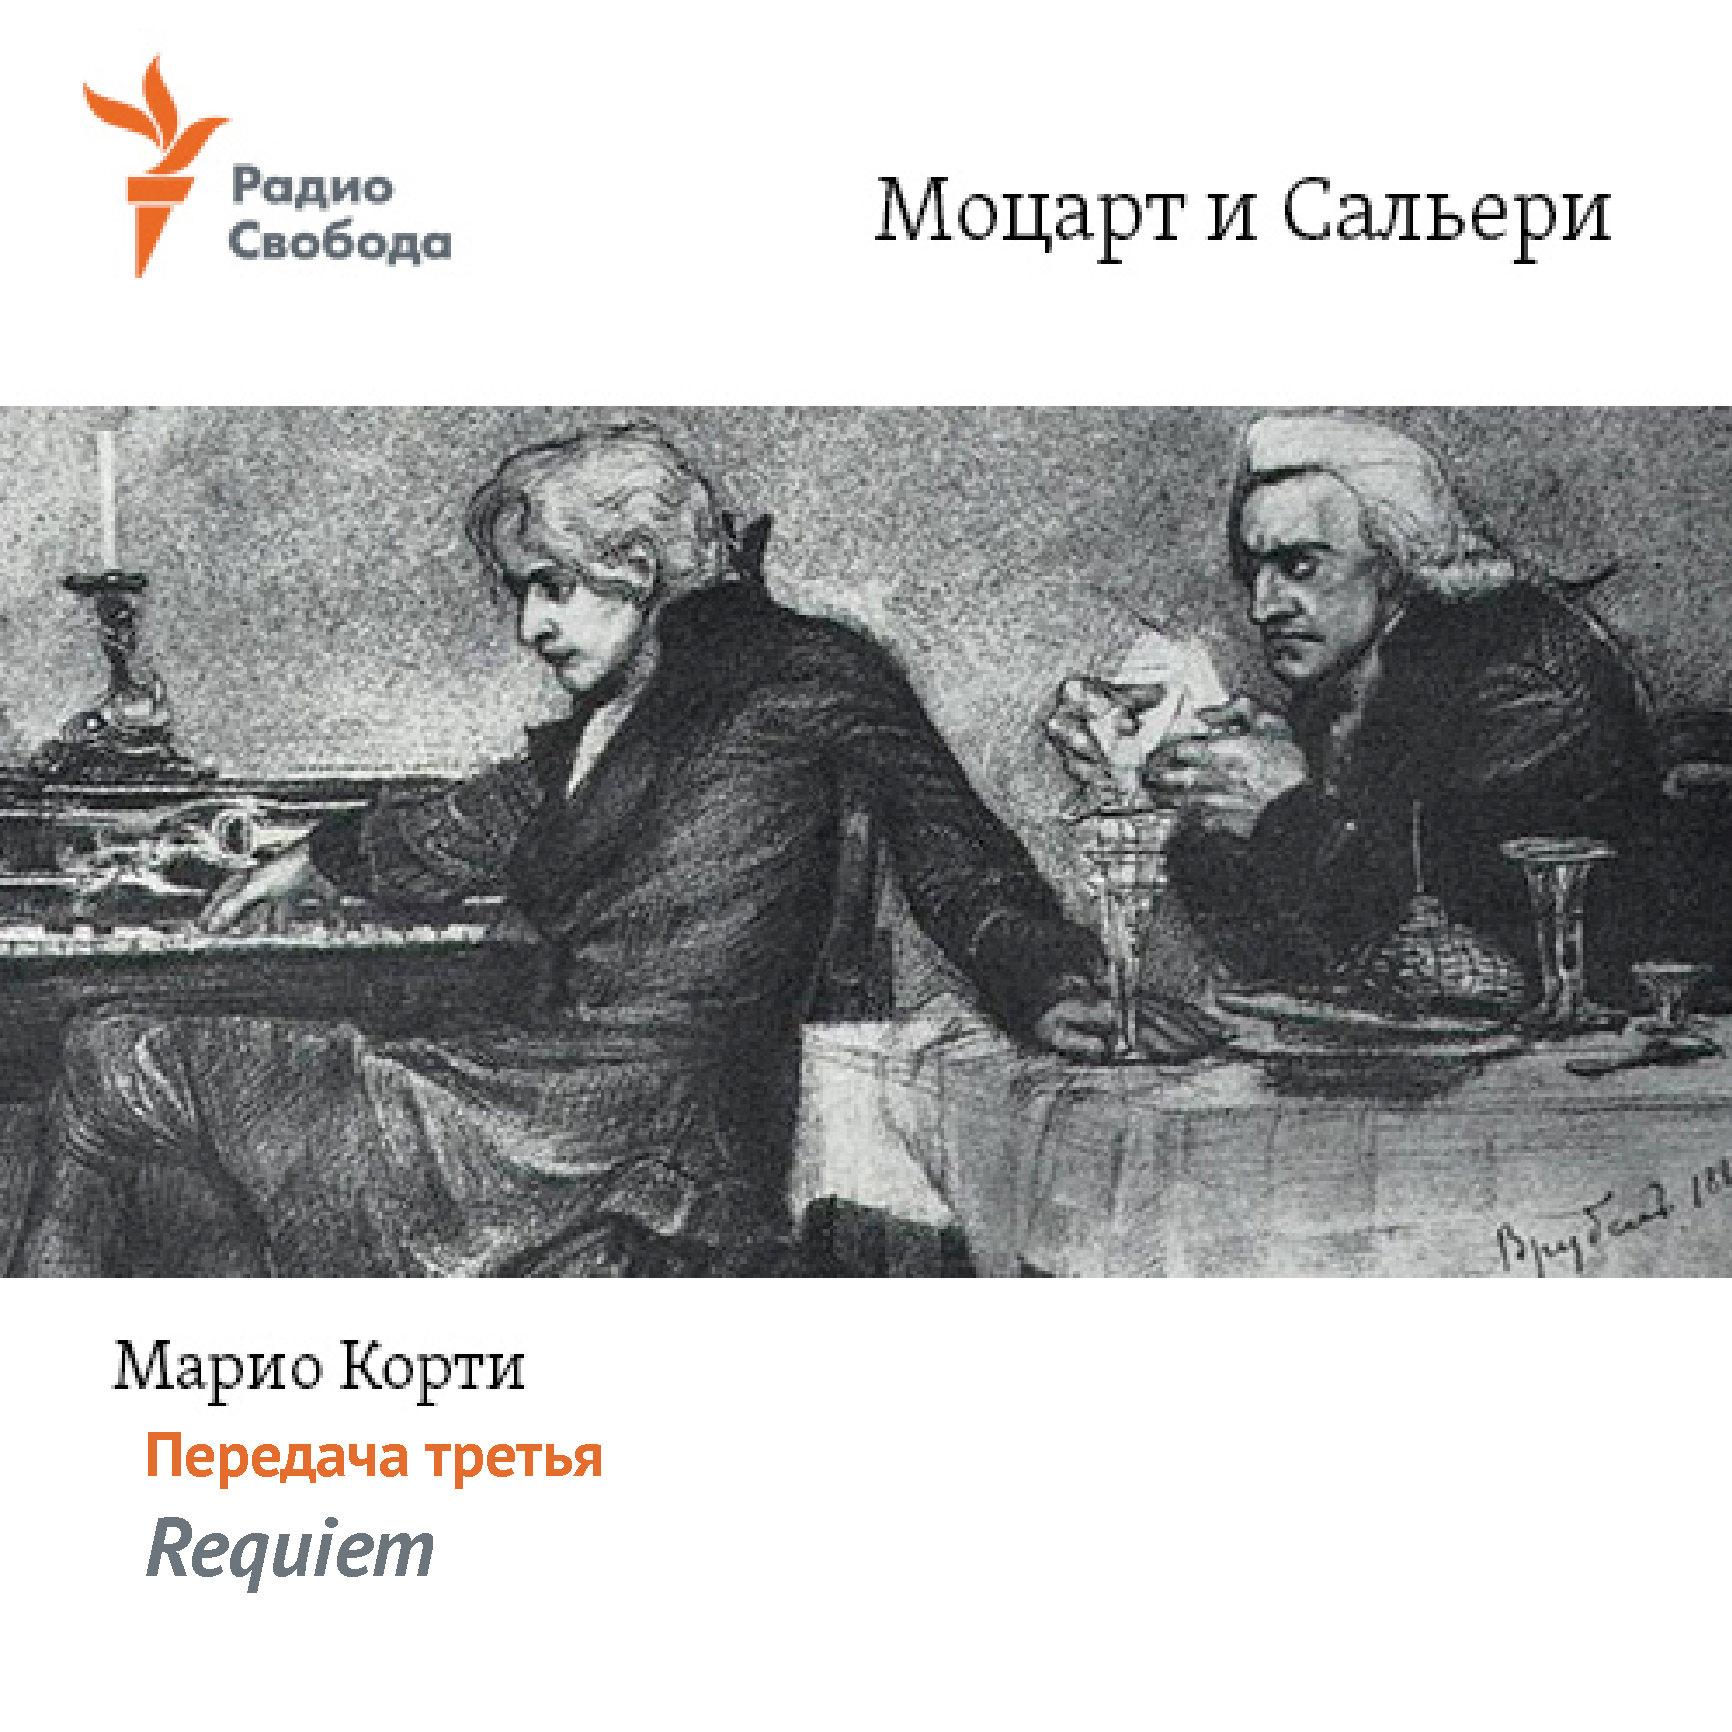 Моцарт и Сальери. Передача третья – Requiem